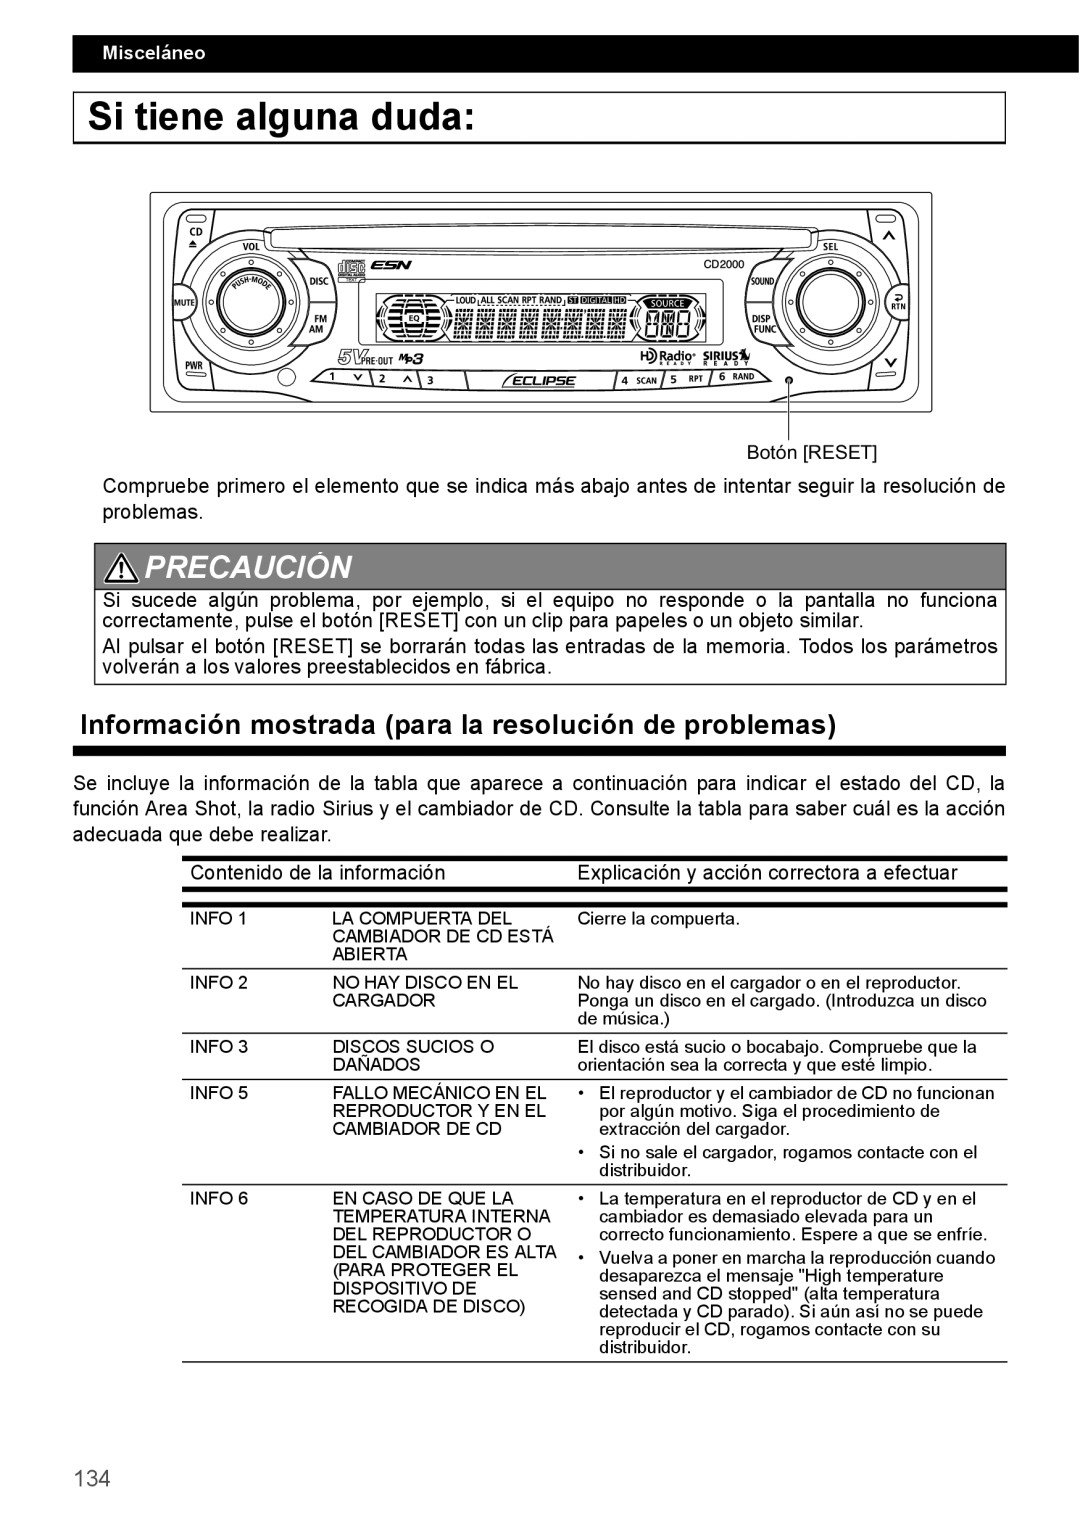 Eclipse - Fujitsu Ten CD2000 manual Si tiene alguna duda, Precaución, Información mostrada para la resolución de problemas 